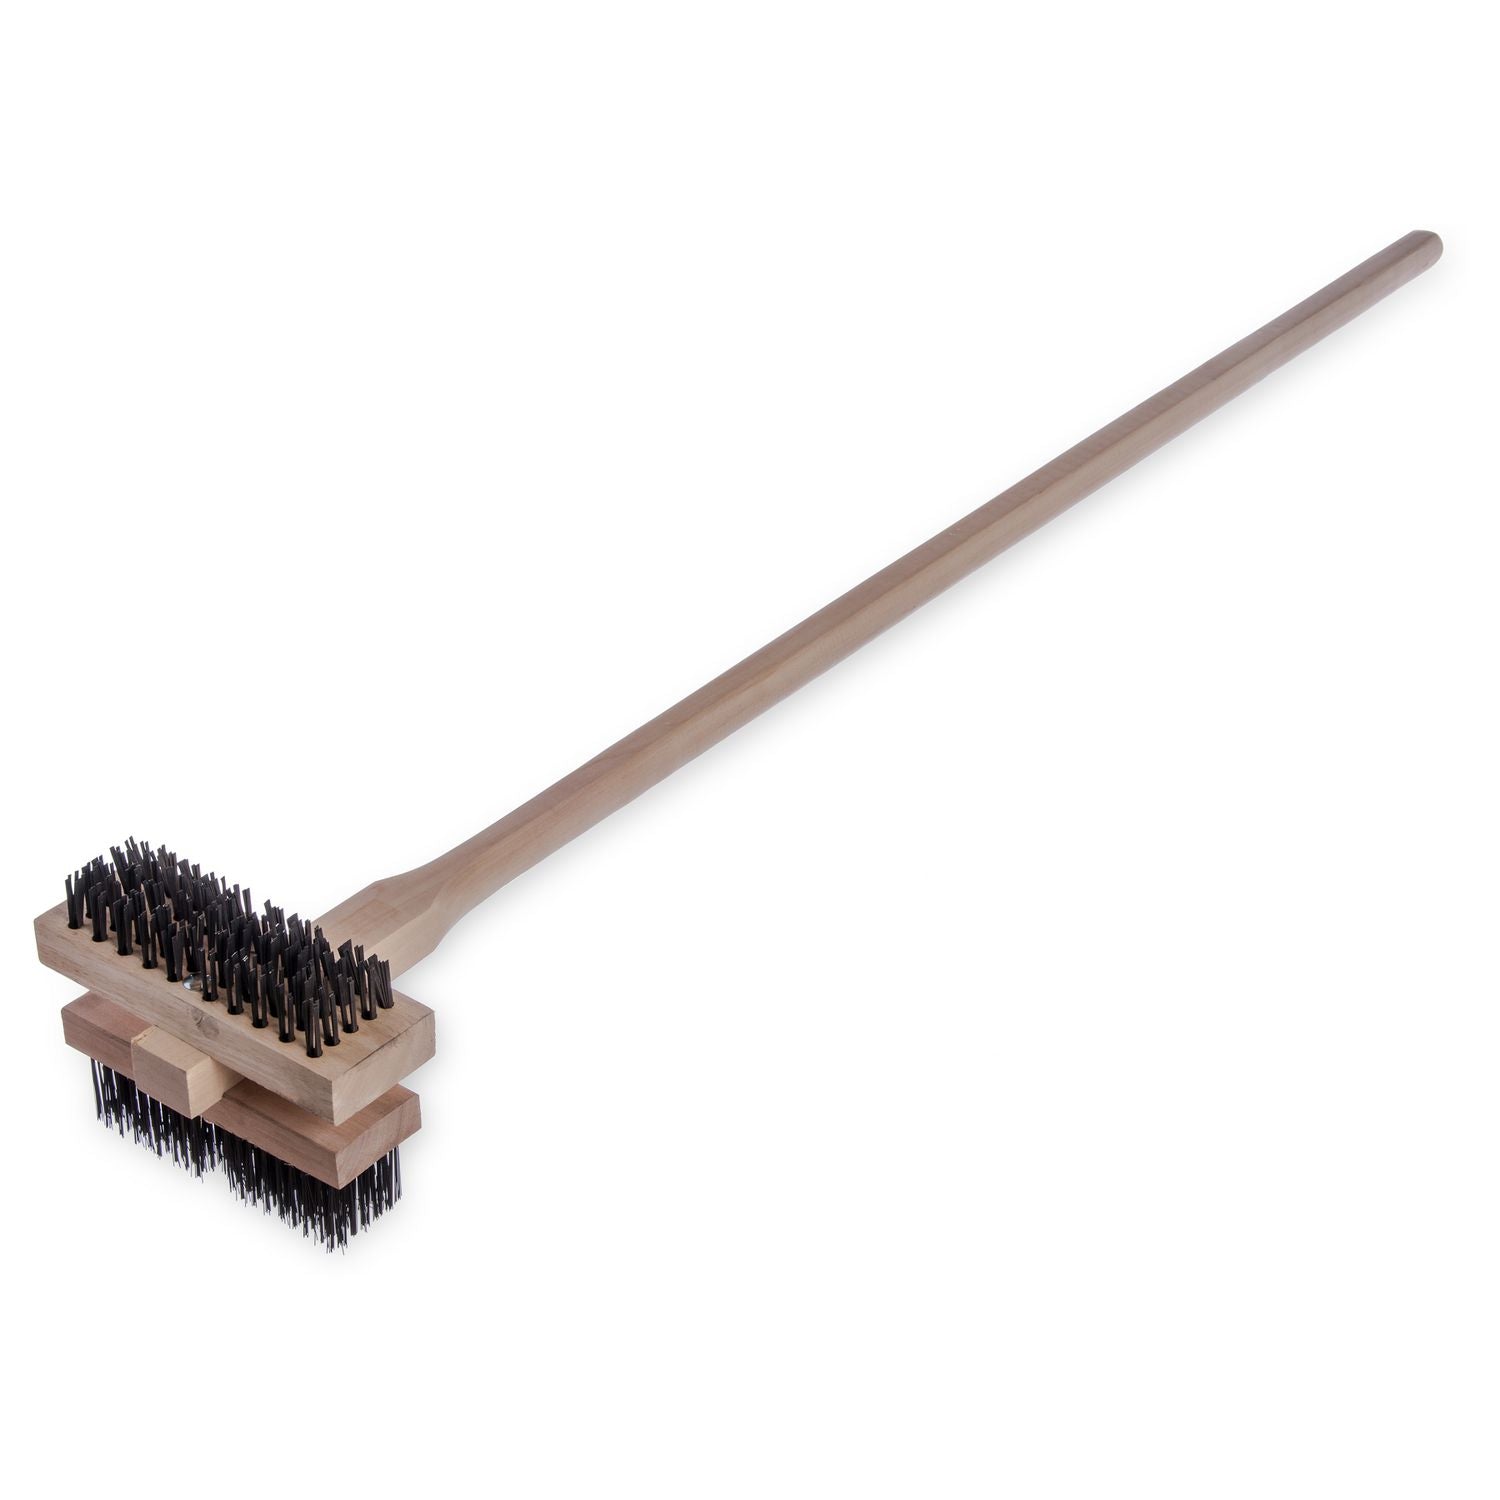 sparta-broiler-master-grill-brush-and-scraper-with-handle-metal-bristles-48-natural-wood-handle_cfs4029400 - 2